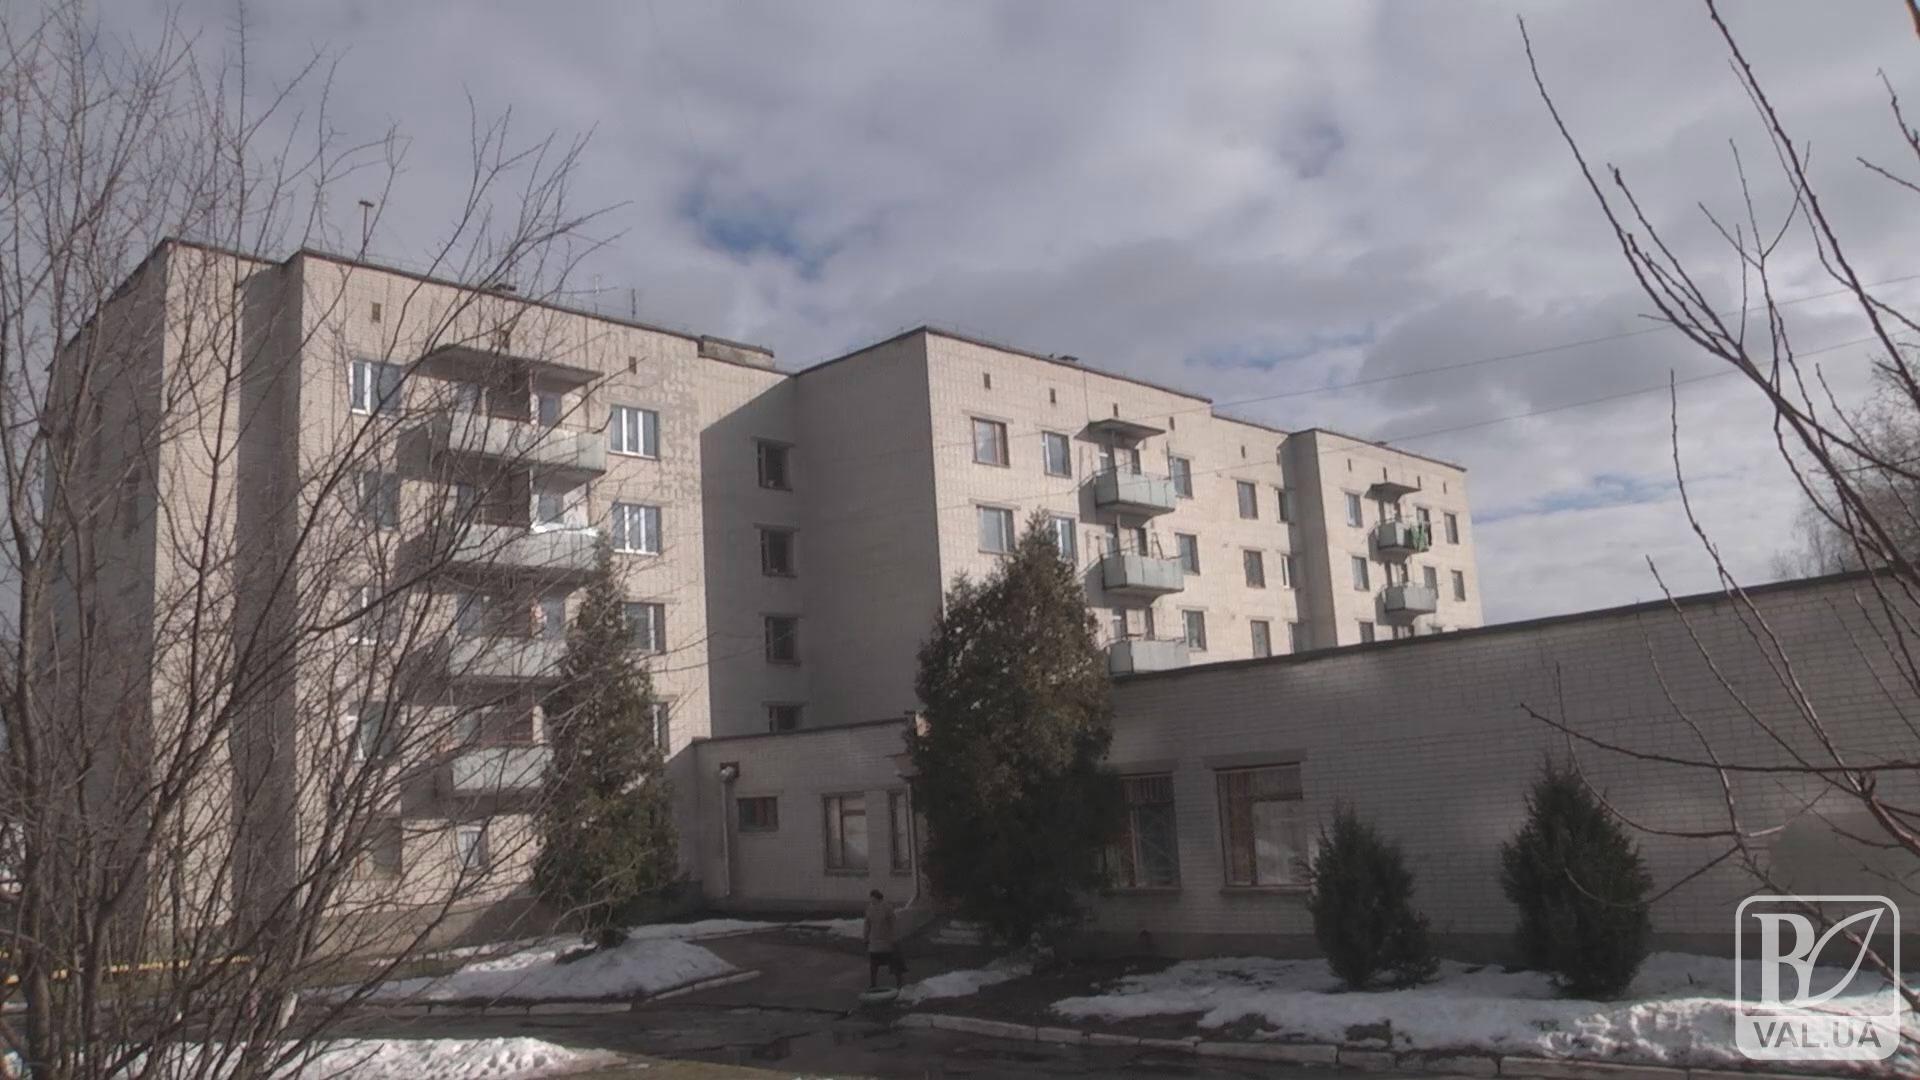 Путь к приватизации: смогут ли жители общежития на Осипенко приватизировать свои квартиры? ВИДЕО 